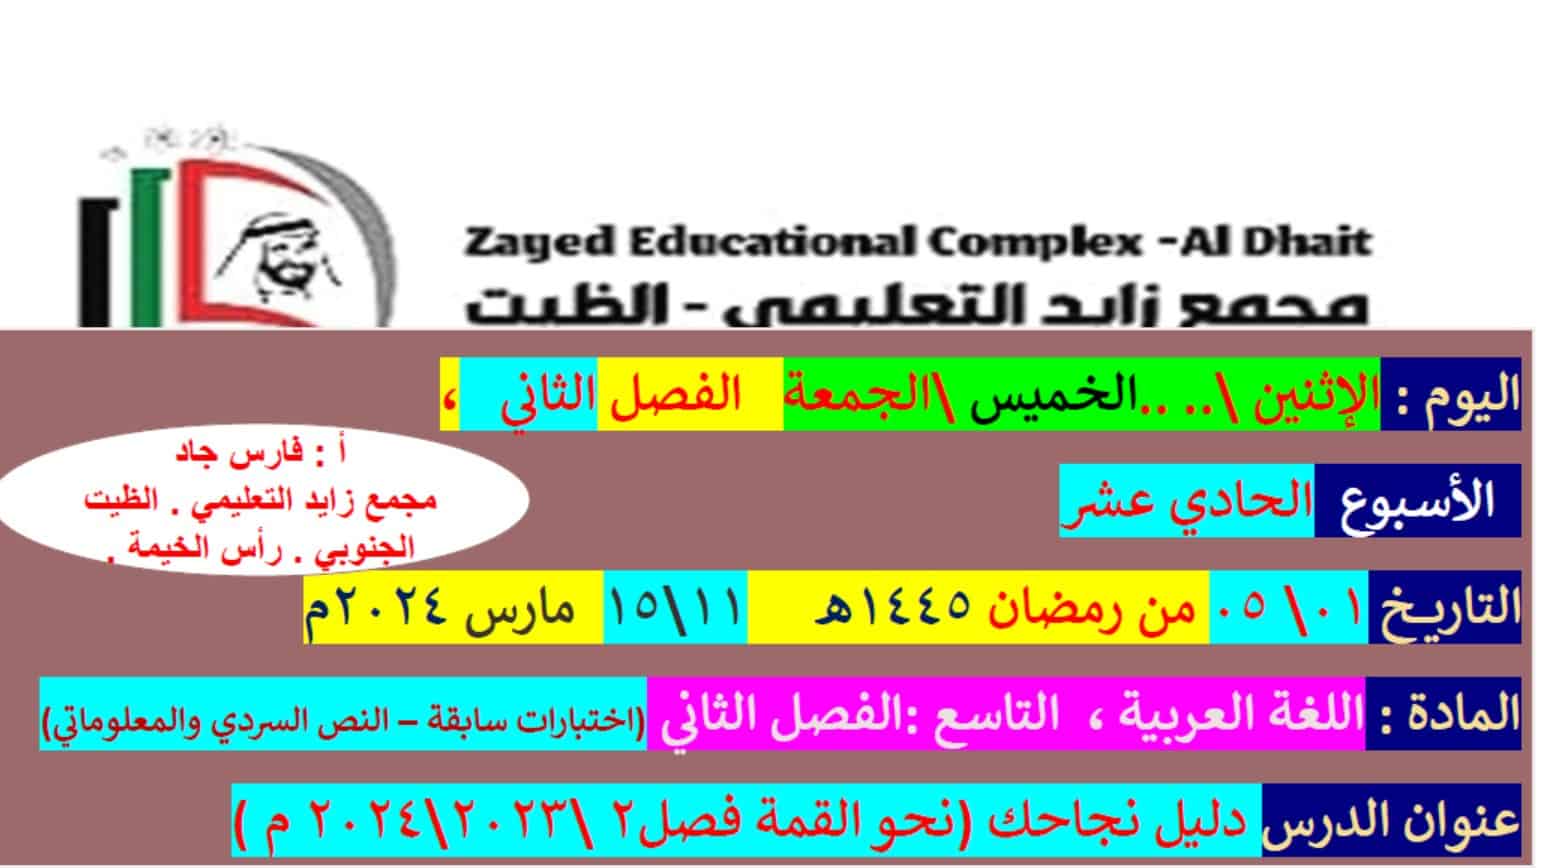 مراجعة عامة حسب الهيكل الوزاري اللغة العربية الصف التاسع